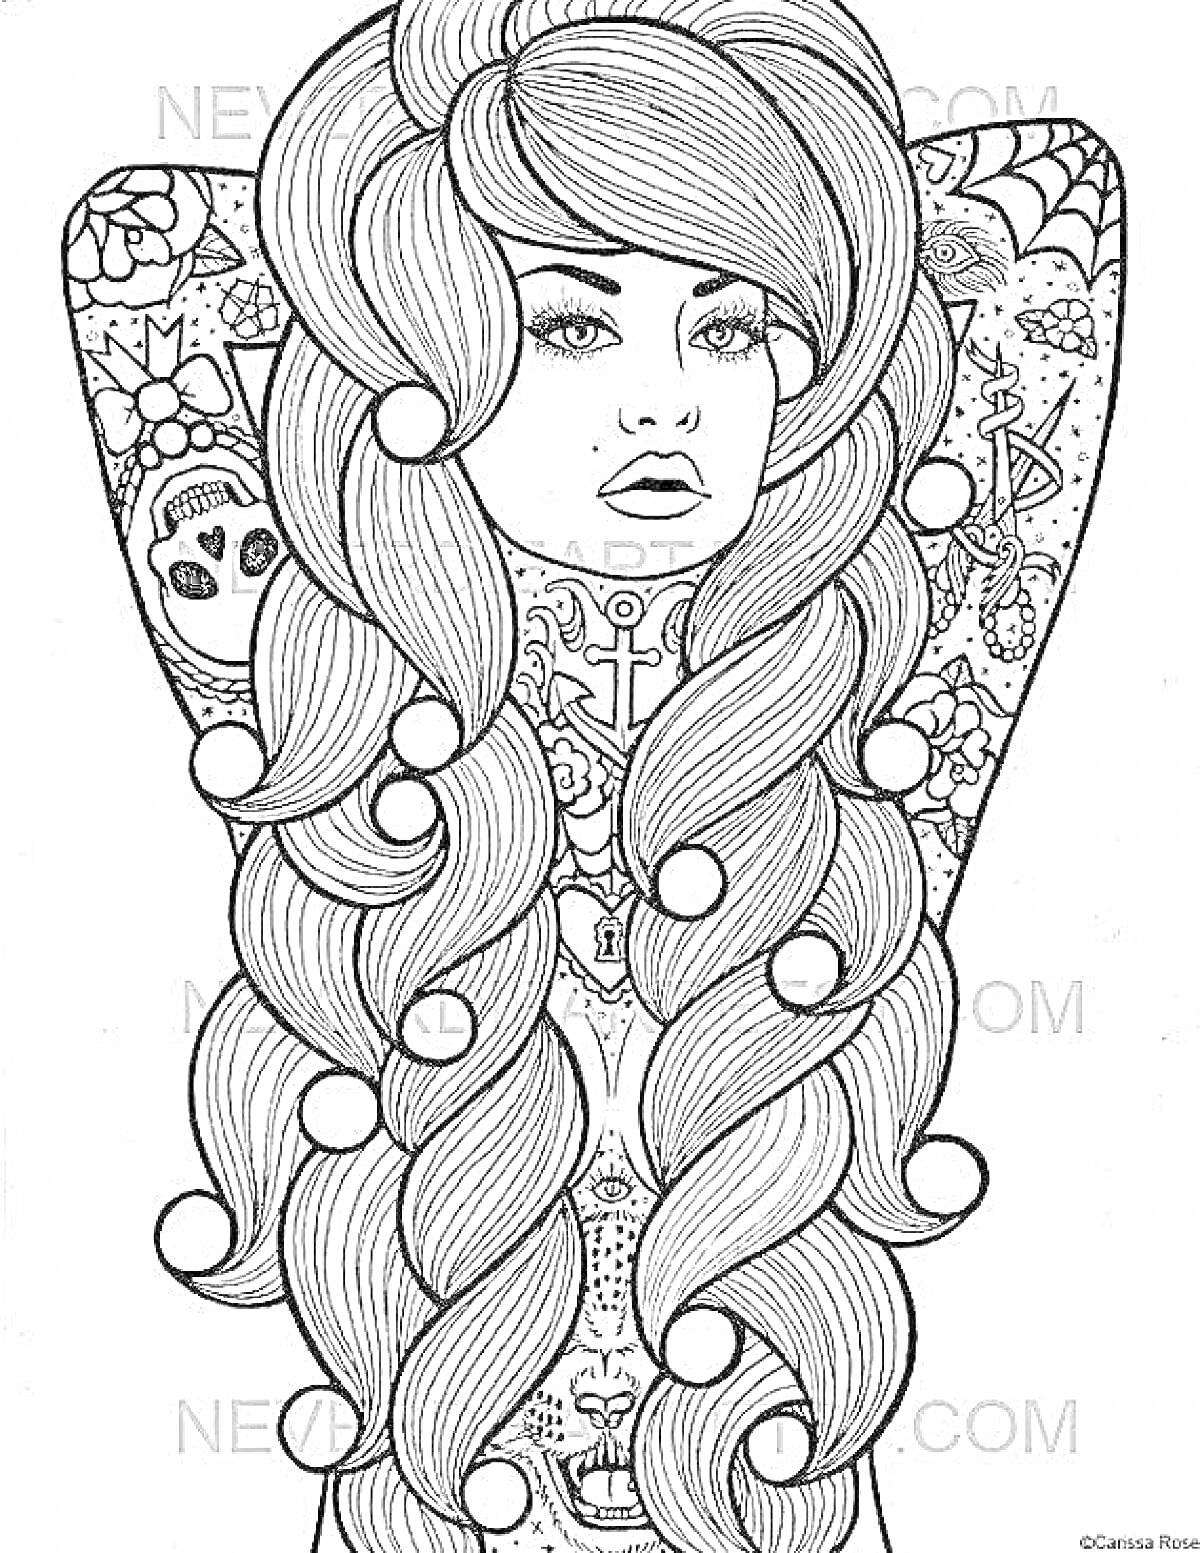 Раскраска Девушка с длинными вьющимися волосами и татуировками, включающими узоры, якоря и паучьи сети